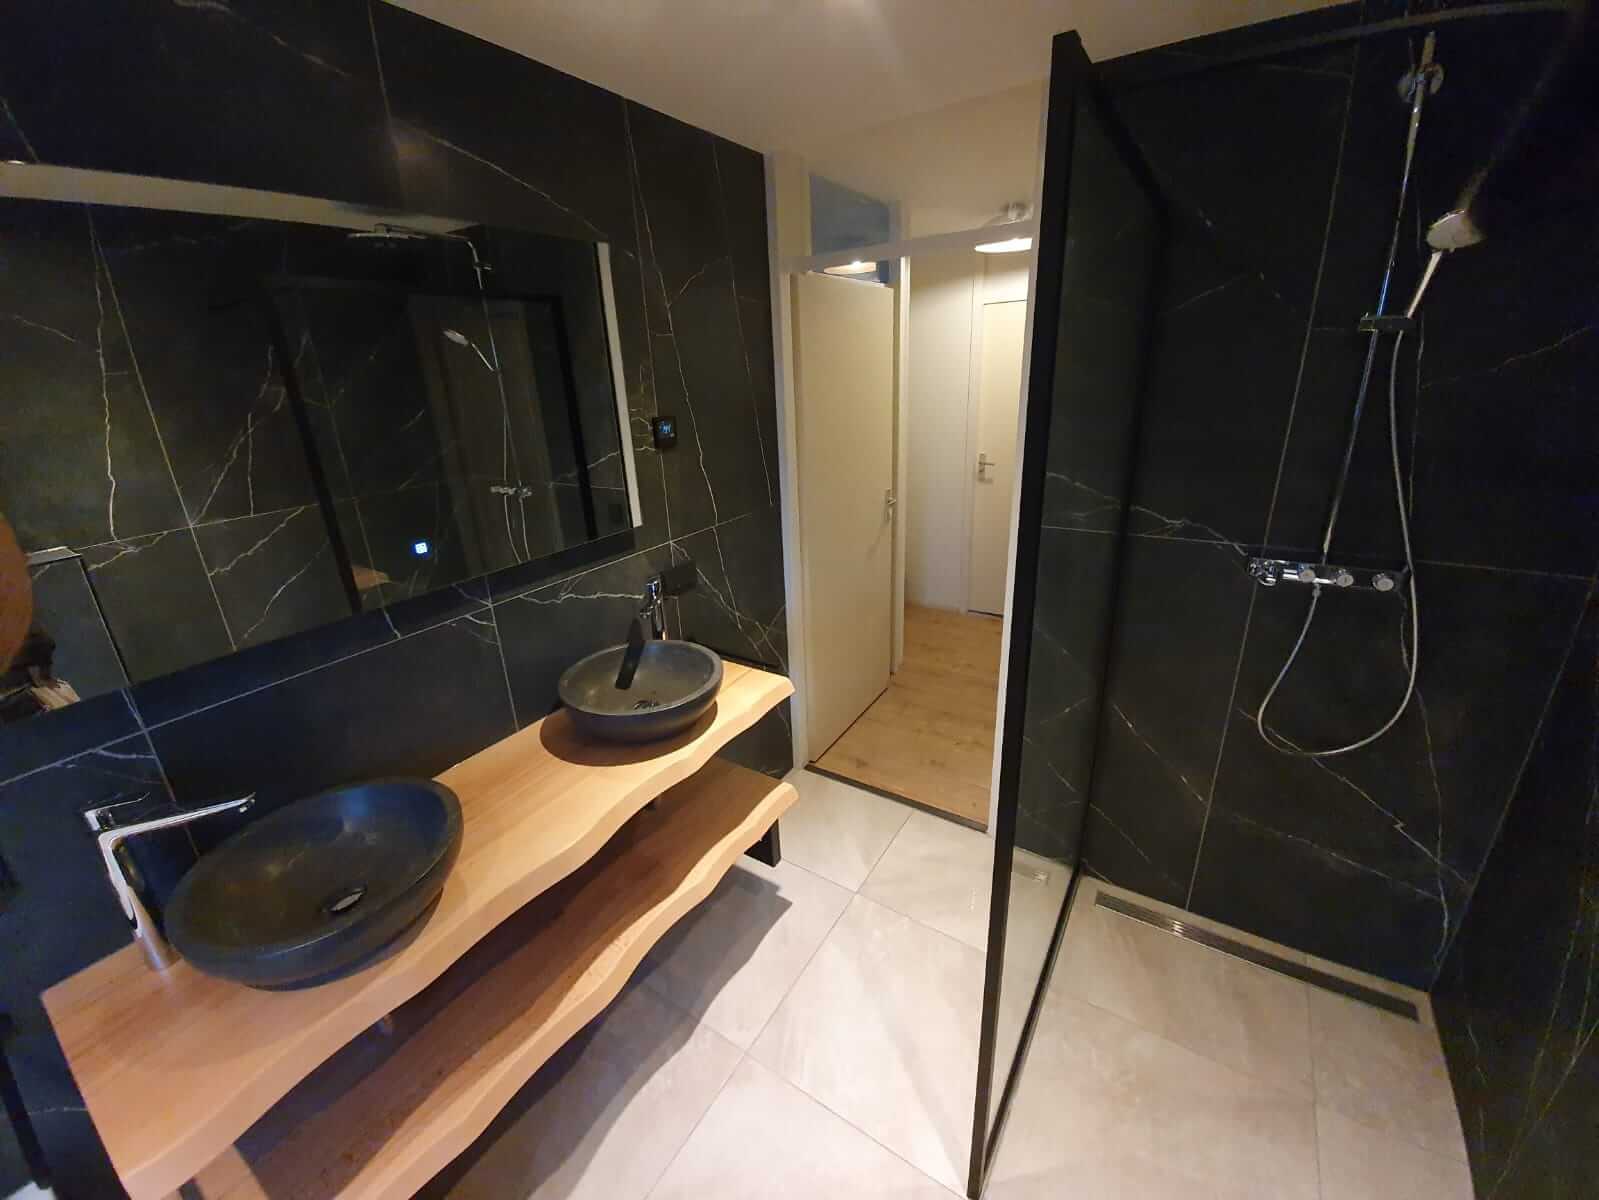 Badkamer renovatie robuuste en moderne stijl